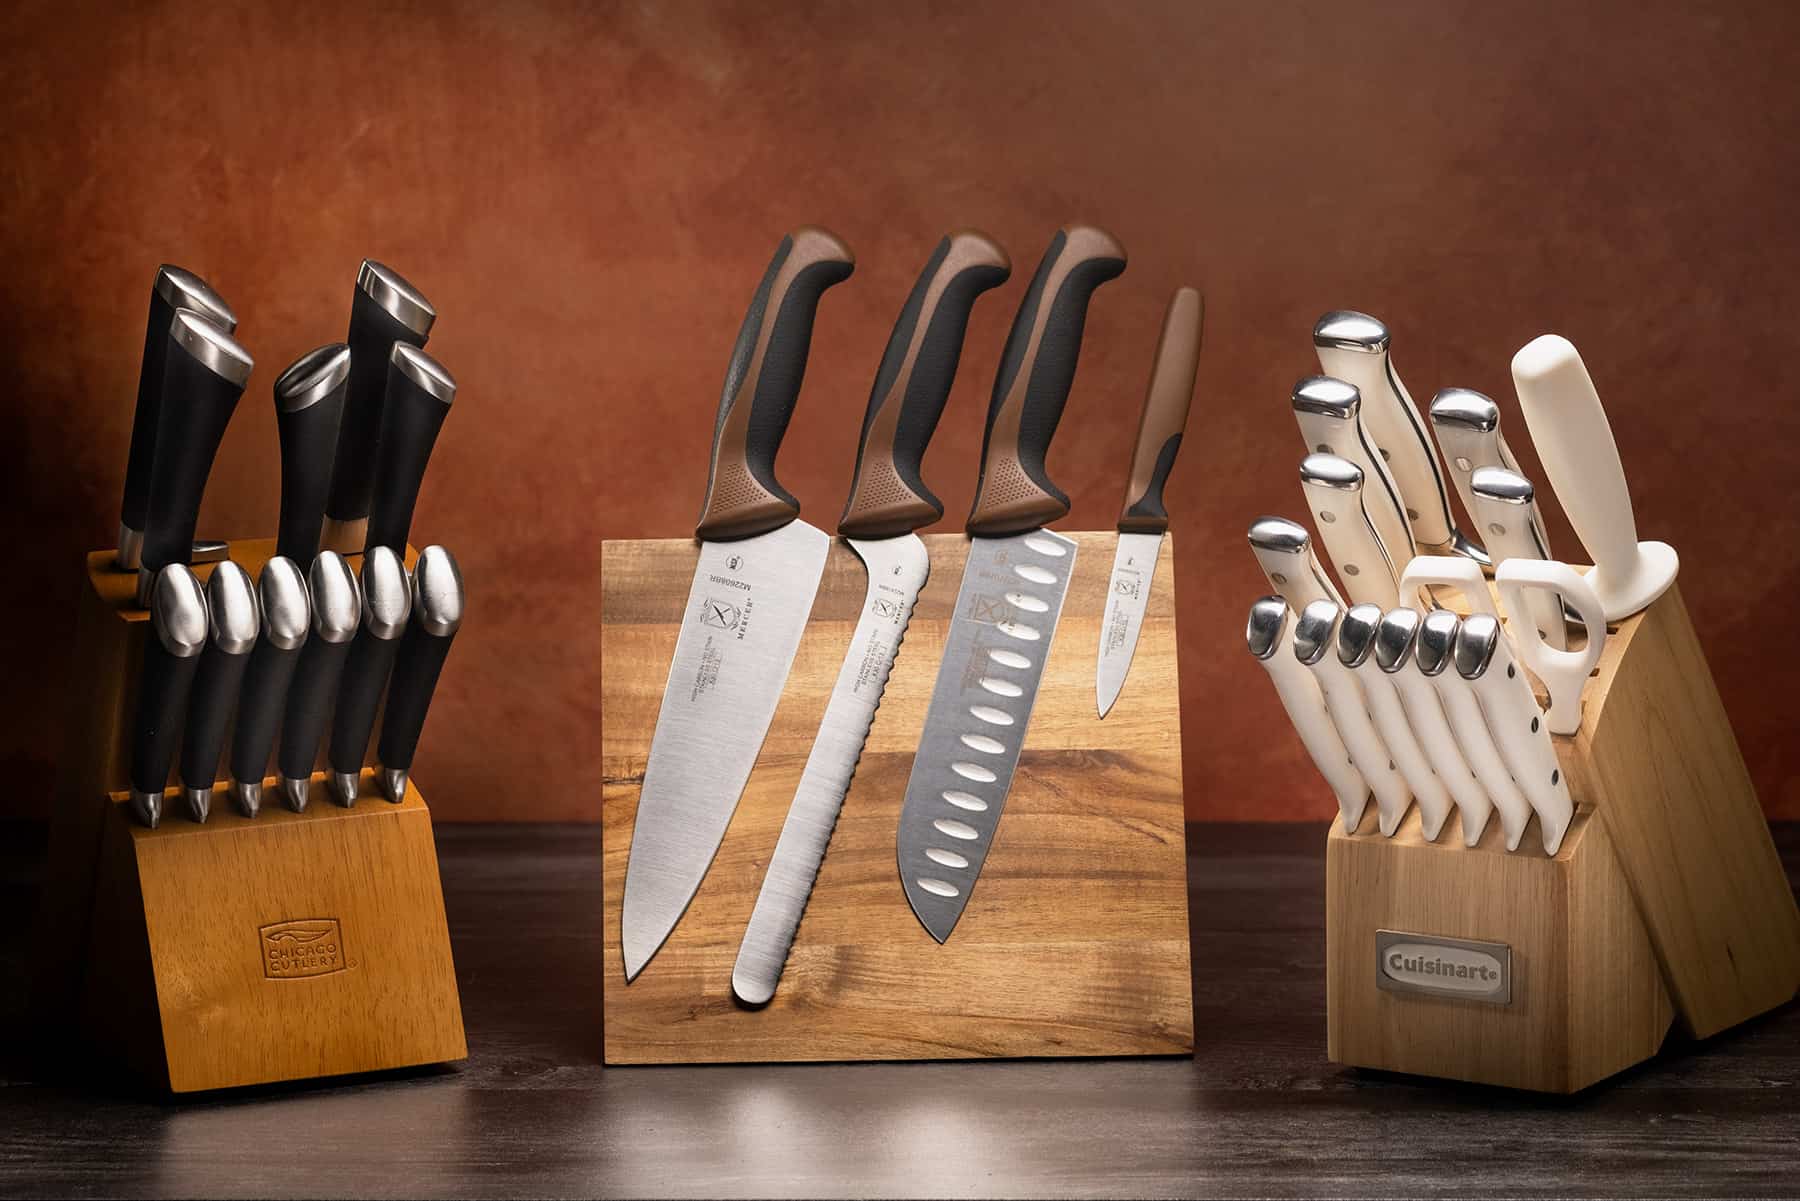 https://www.nothingbutknives.com/wp-content/uploads/2017/03/Best-Kitchen-Knife-Sets-Under-100.jpg